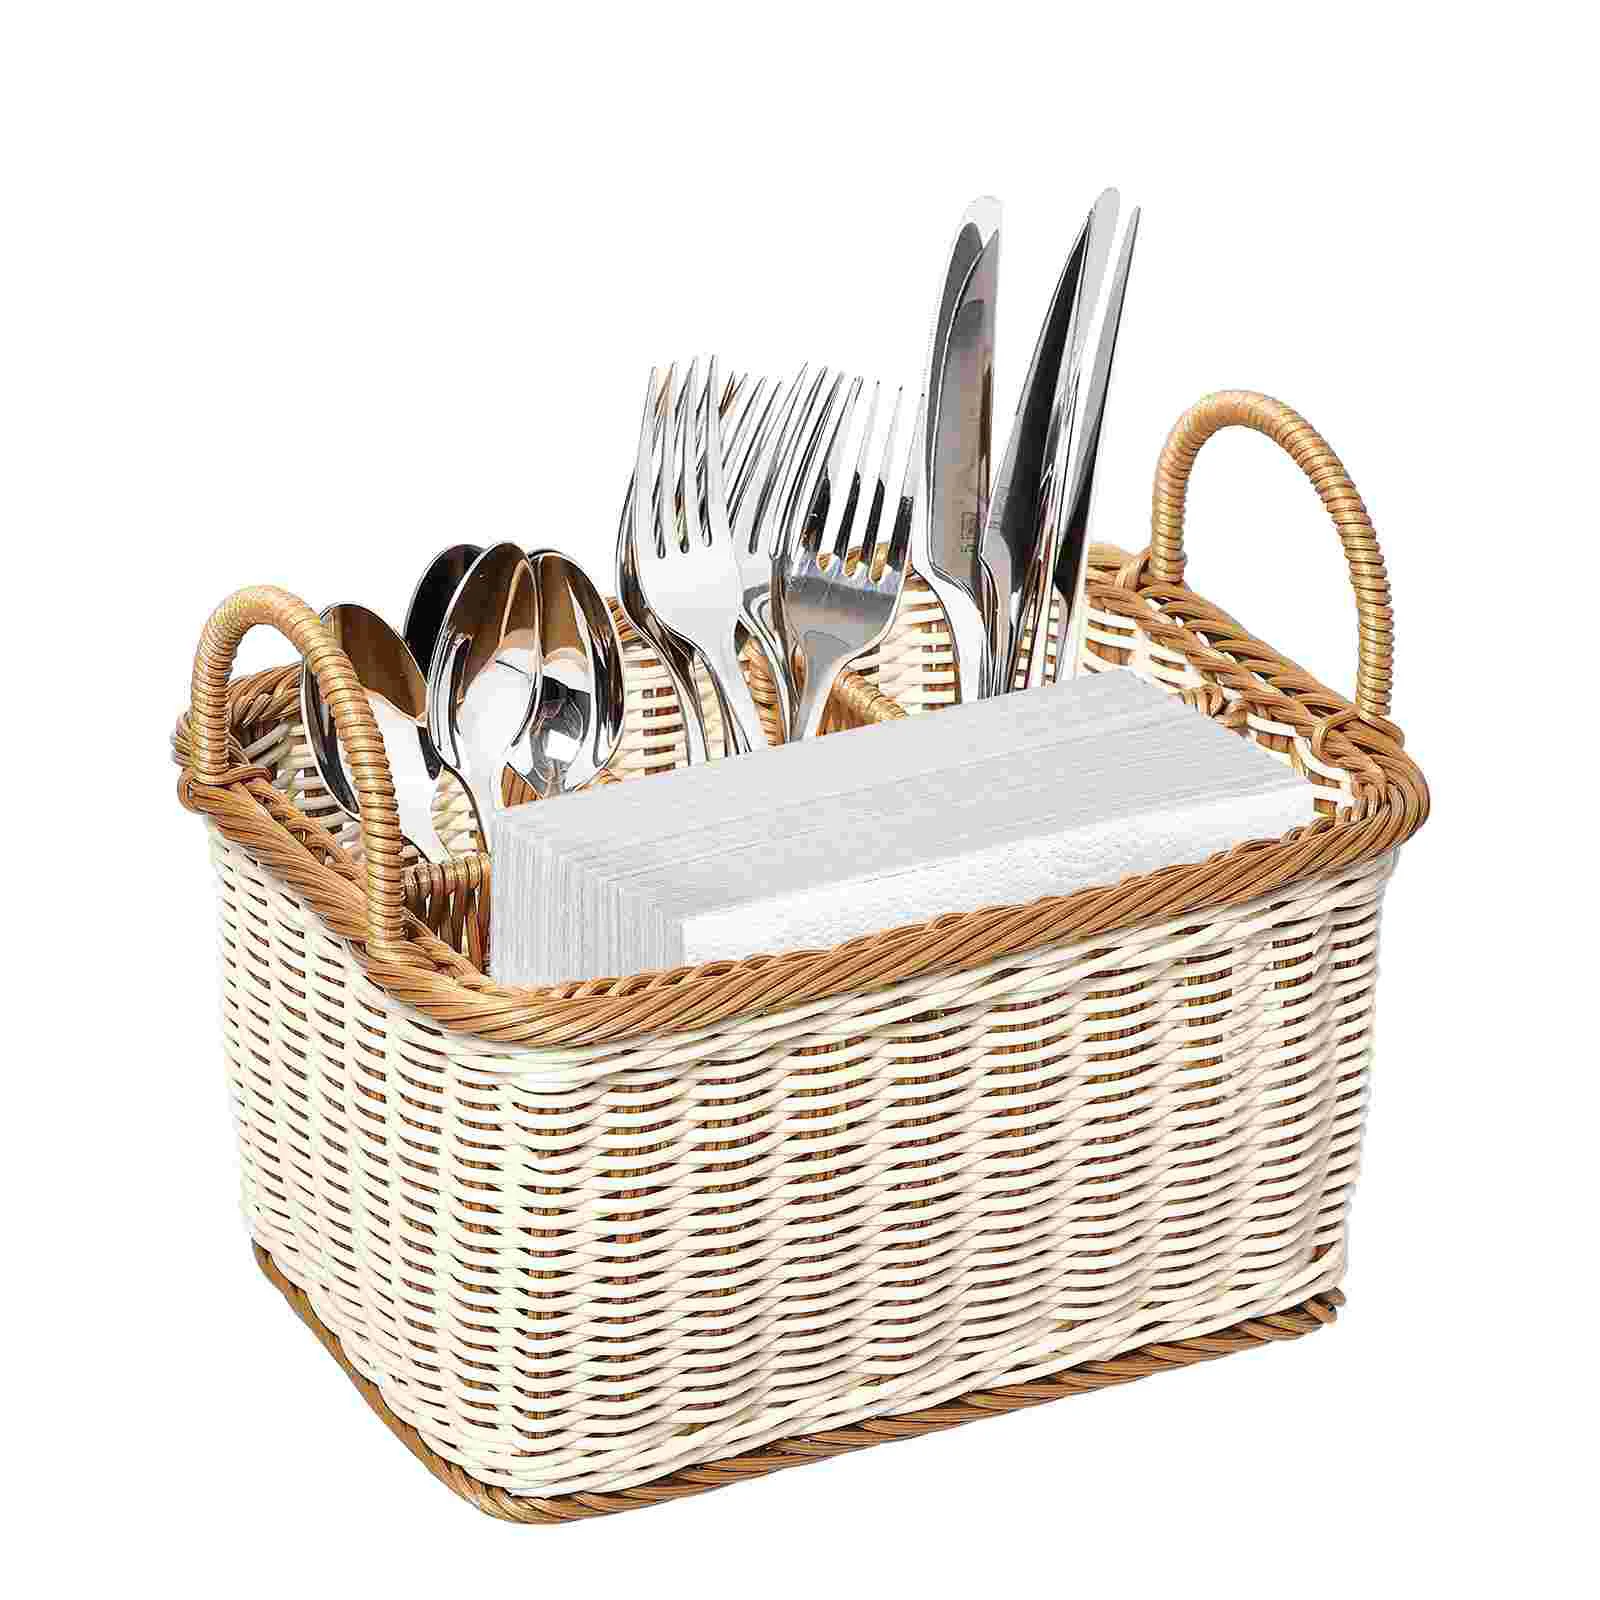 

Basket Storage Utensil Baskets Silverware Holder Organizer Woven Picnic Wicker Kitchen Organizing Cutlery Outdoor Rattan